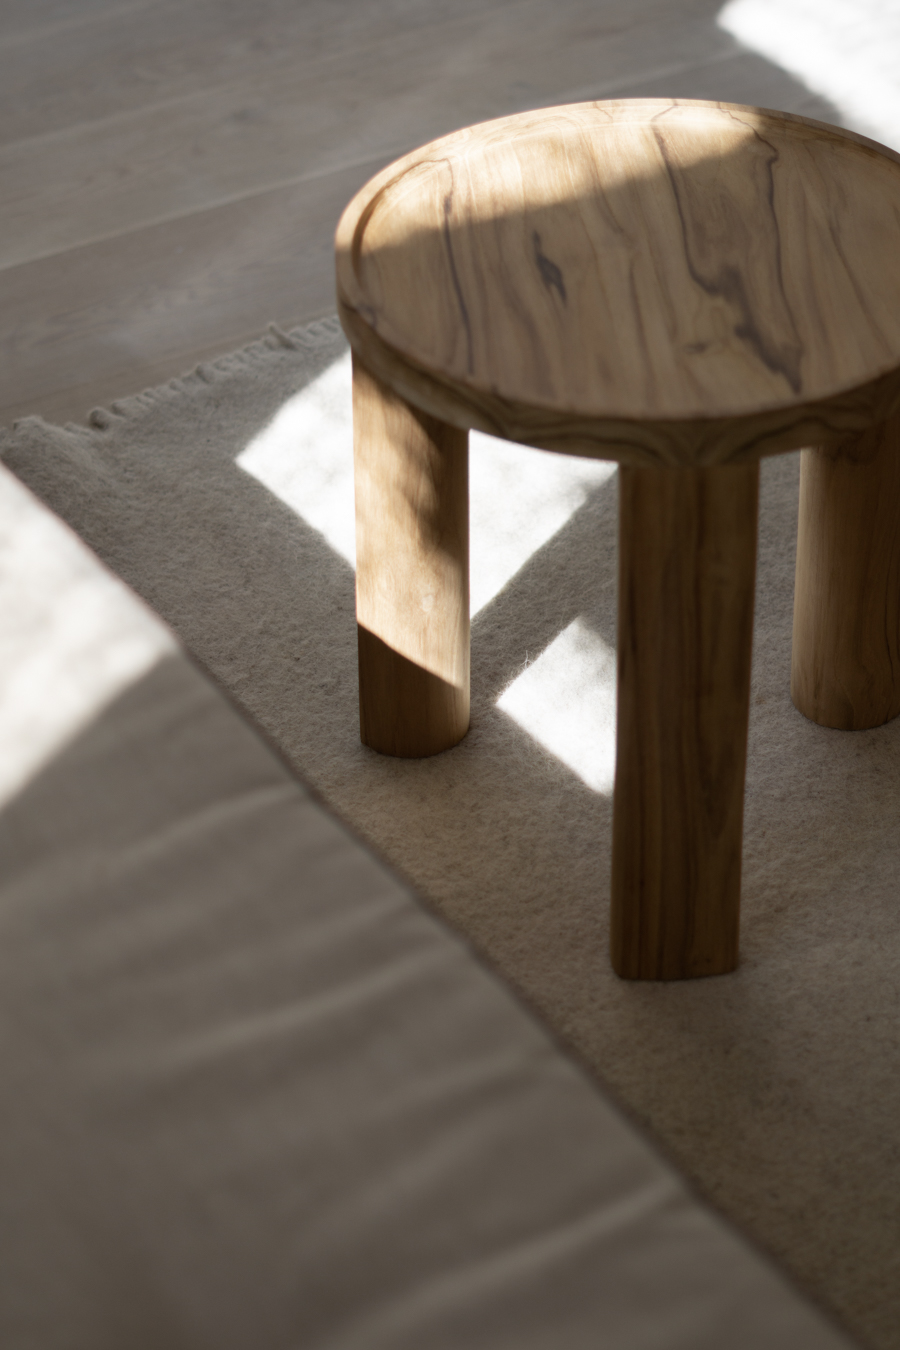 FORESTA Collection, Rebecca Goddard Furniture Design, 3daysofdesign 2020, Nyt I Bo Copenhagen Denmark, Neutral Scandinavian Style, Earthy Aesthetic